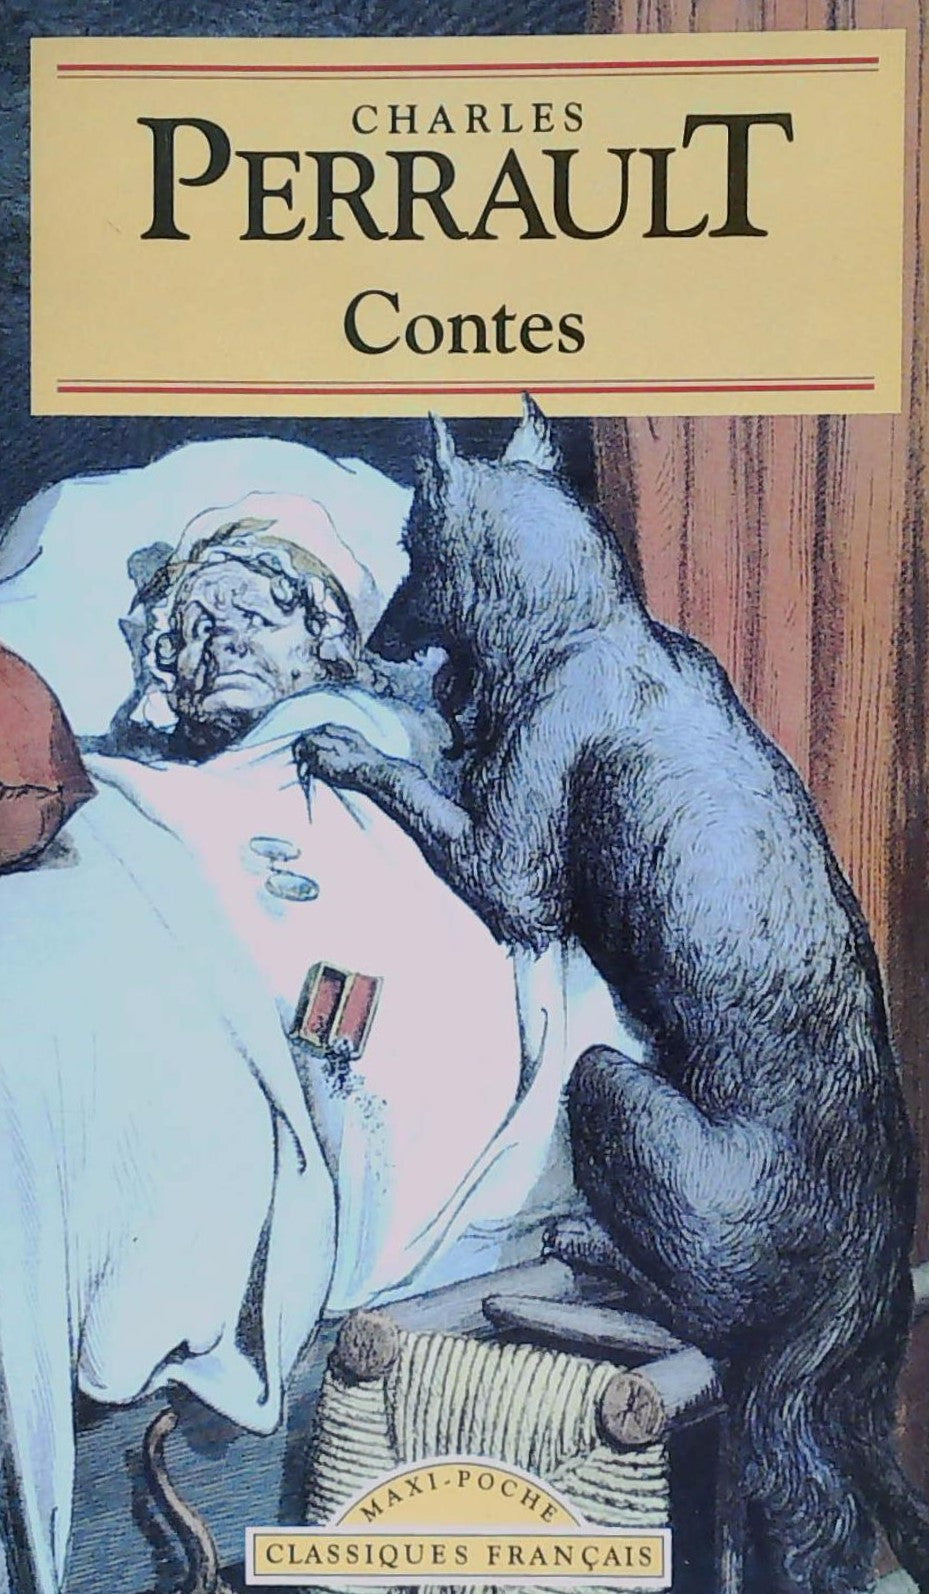 Livre ISBN 2877141659 Classiques Français : Contes (Charles Perrault)